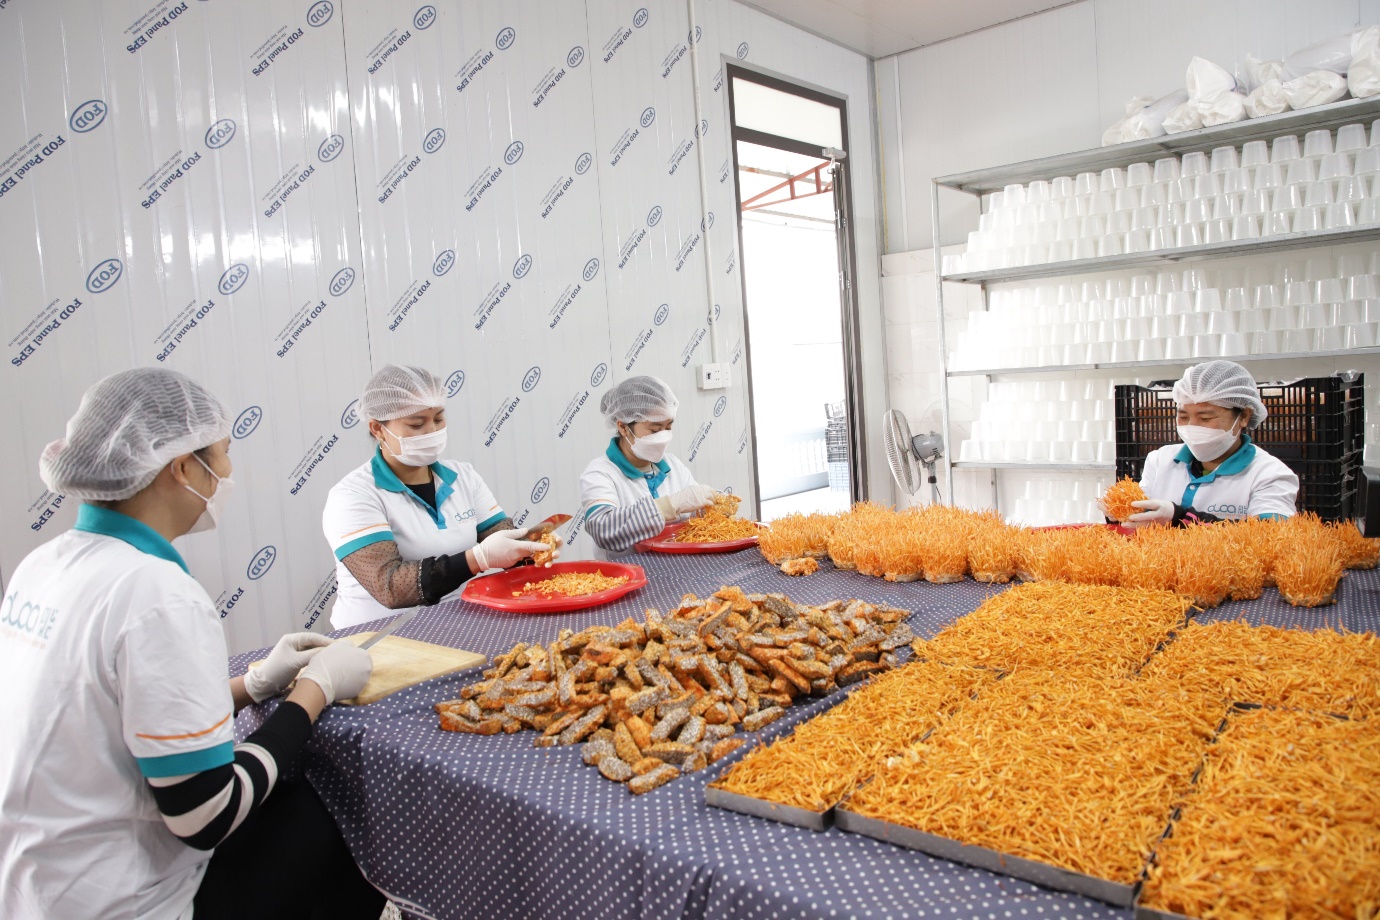 Phát triển cơ giới hóa nông nghiệp và chế biến nông, lâm, thủy sản là chiến lược phát triển của ngành nông nghiệp Bắc Giang - Ảnh 1.